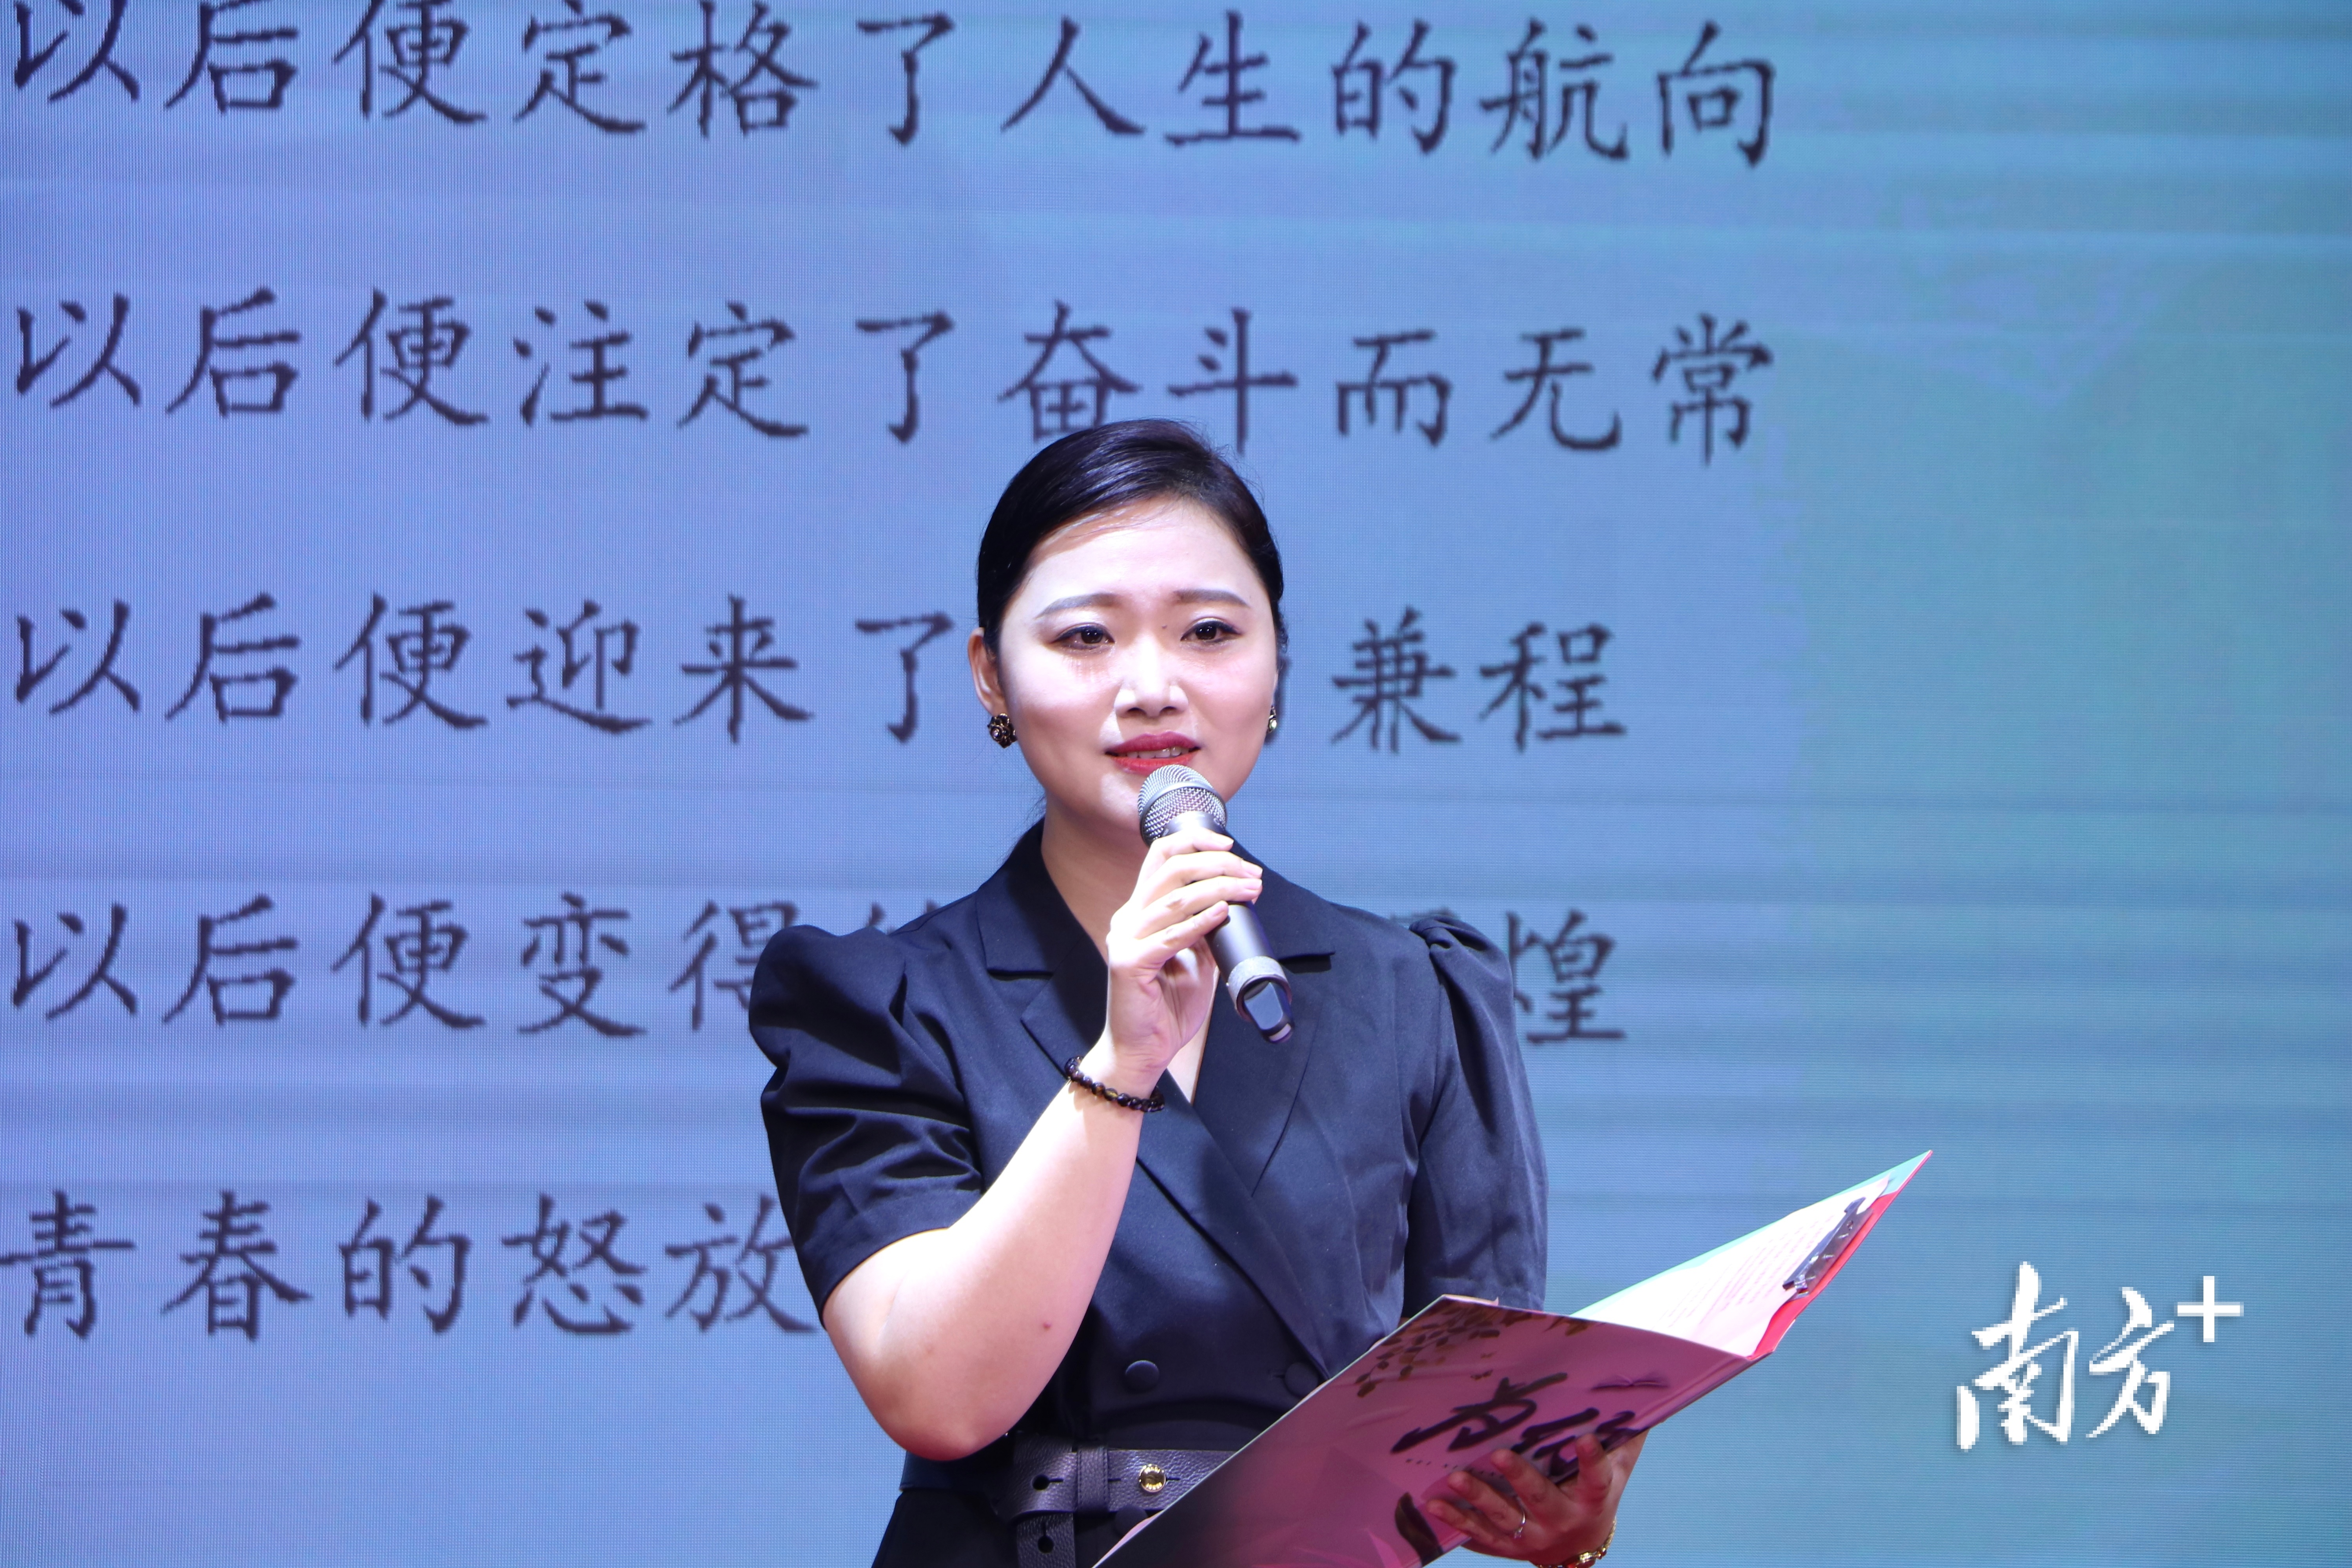 韩山师范学院教育科学学院教师洪英丹带来诗歌朗读《青春的赞歌》。